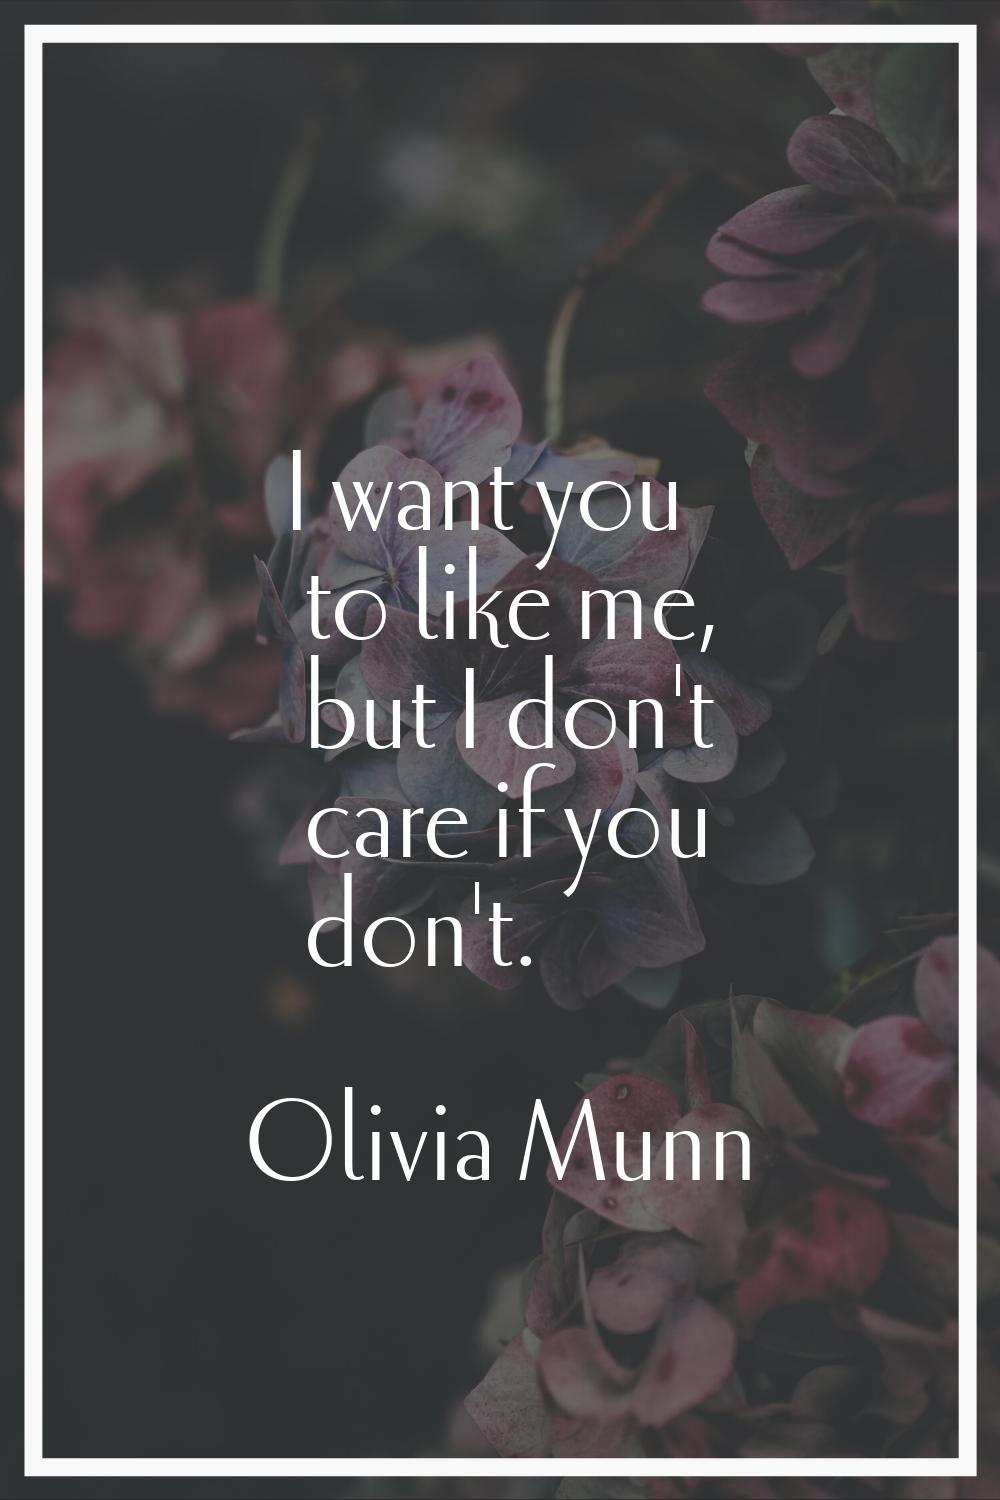 I want you to like me, but I don't care if you don't.